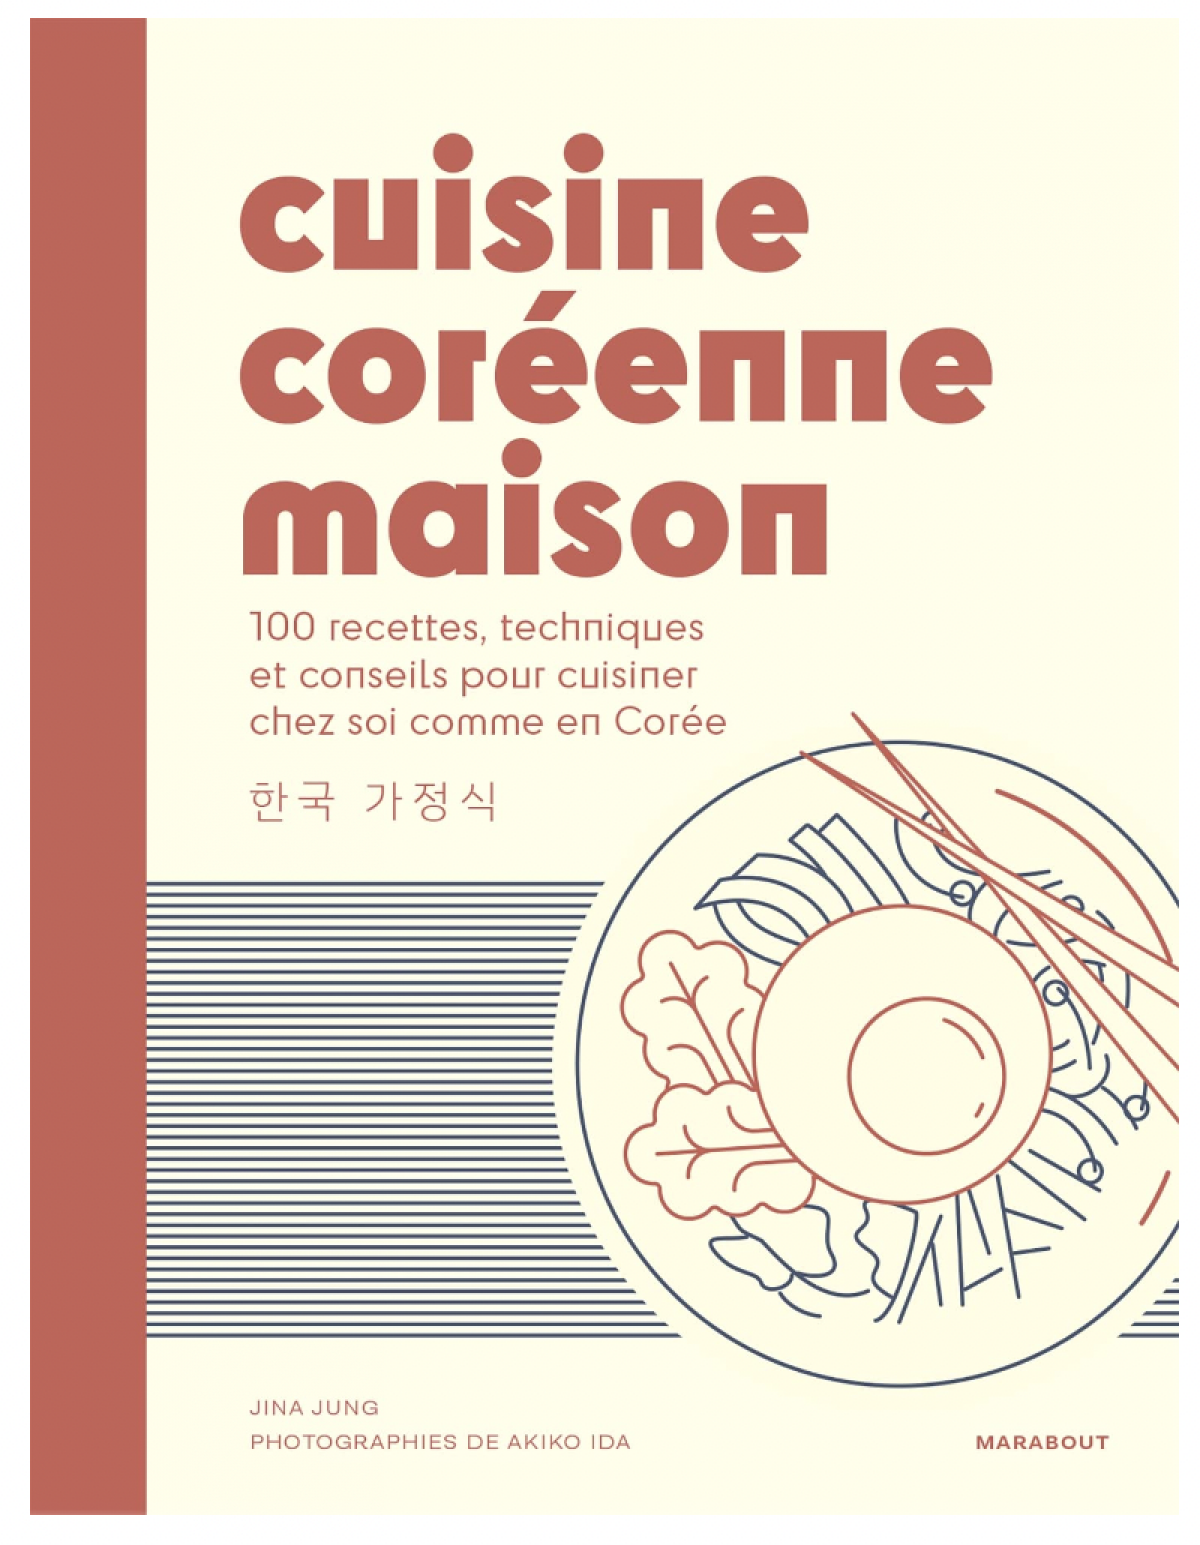 Cuisine coréenne maison: 100 recettes, techniques et conseils pour cuisiner chez soi comme en Corée